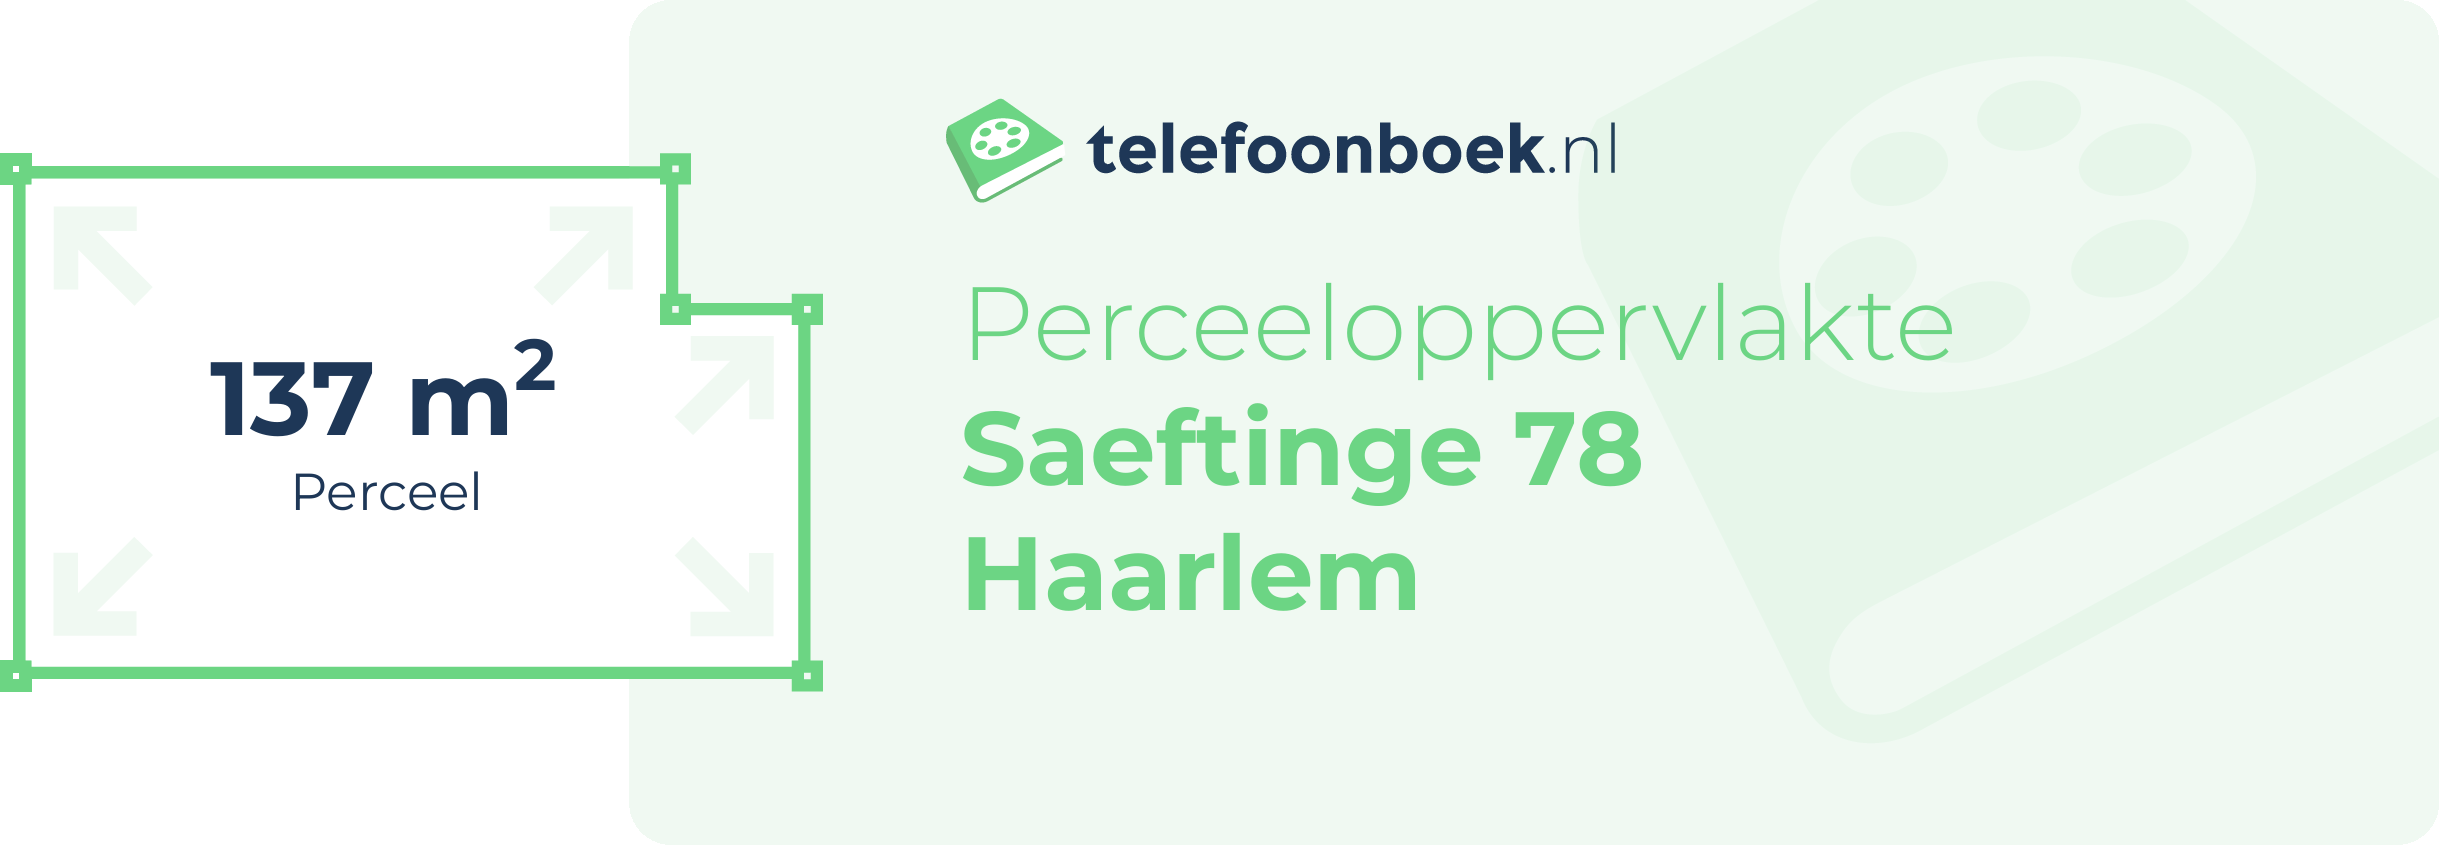 Perceeloppervlakte Saeftinge 78 Haarlem